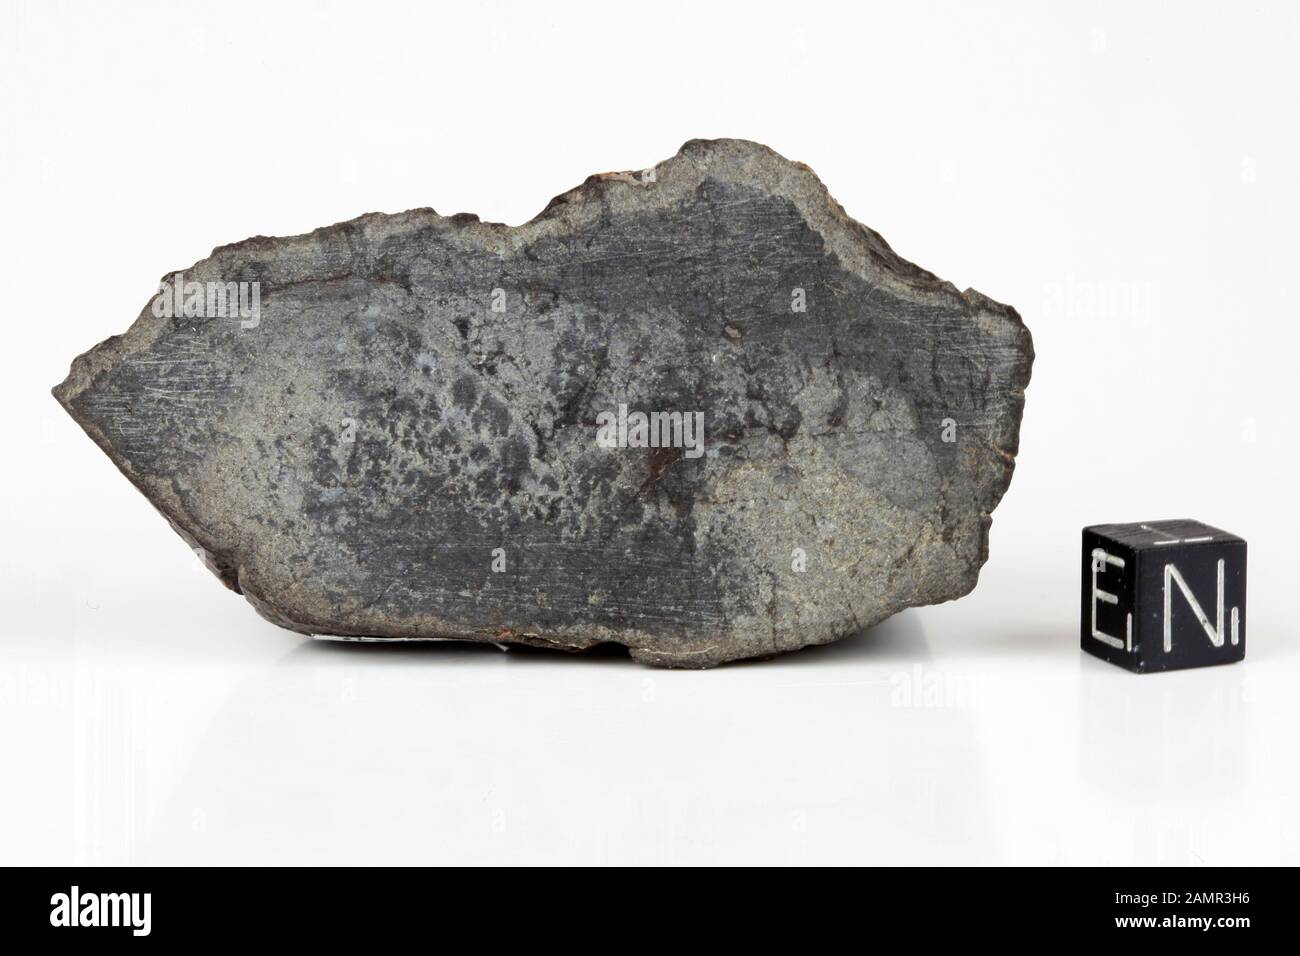 HAMMADAH AL HAMRA 202 - trovati 1997, Libia, Africa. Chondrite LL6. Massa totale 386 grammi Foto Stock